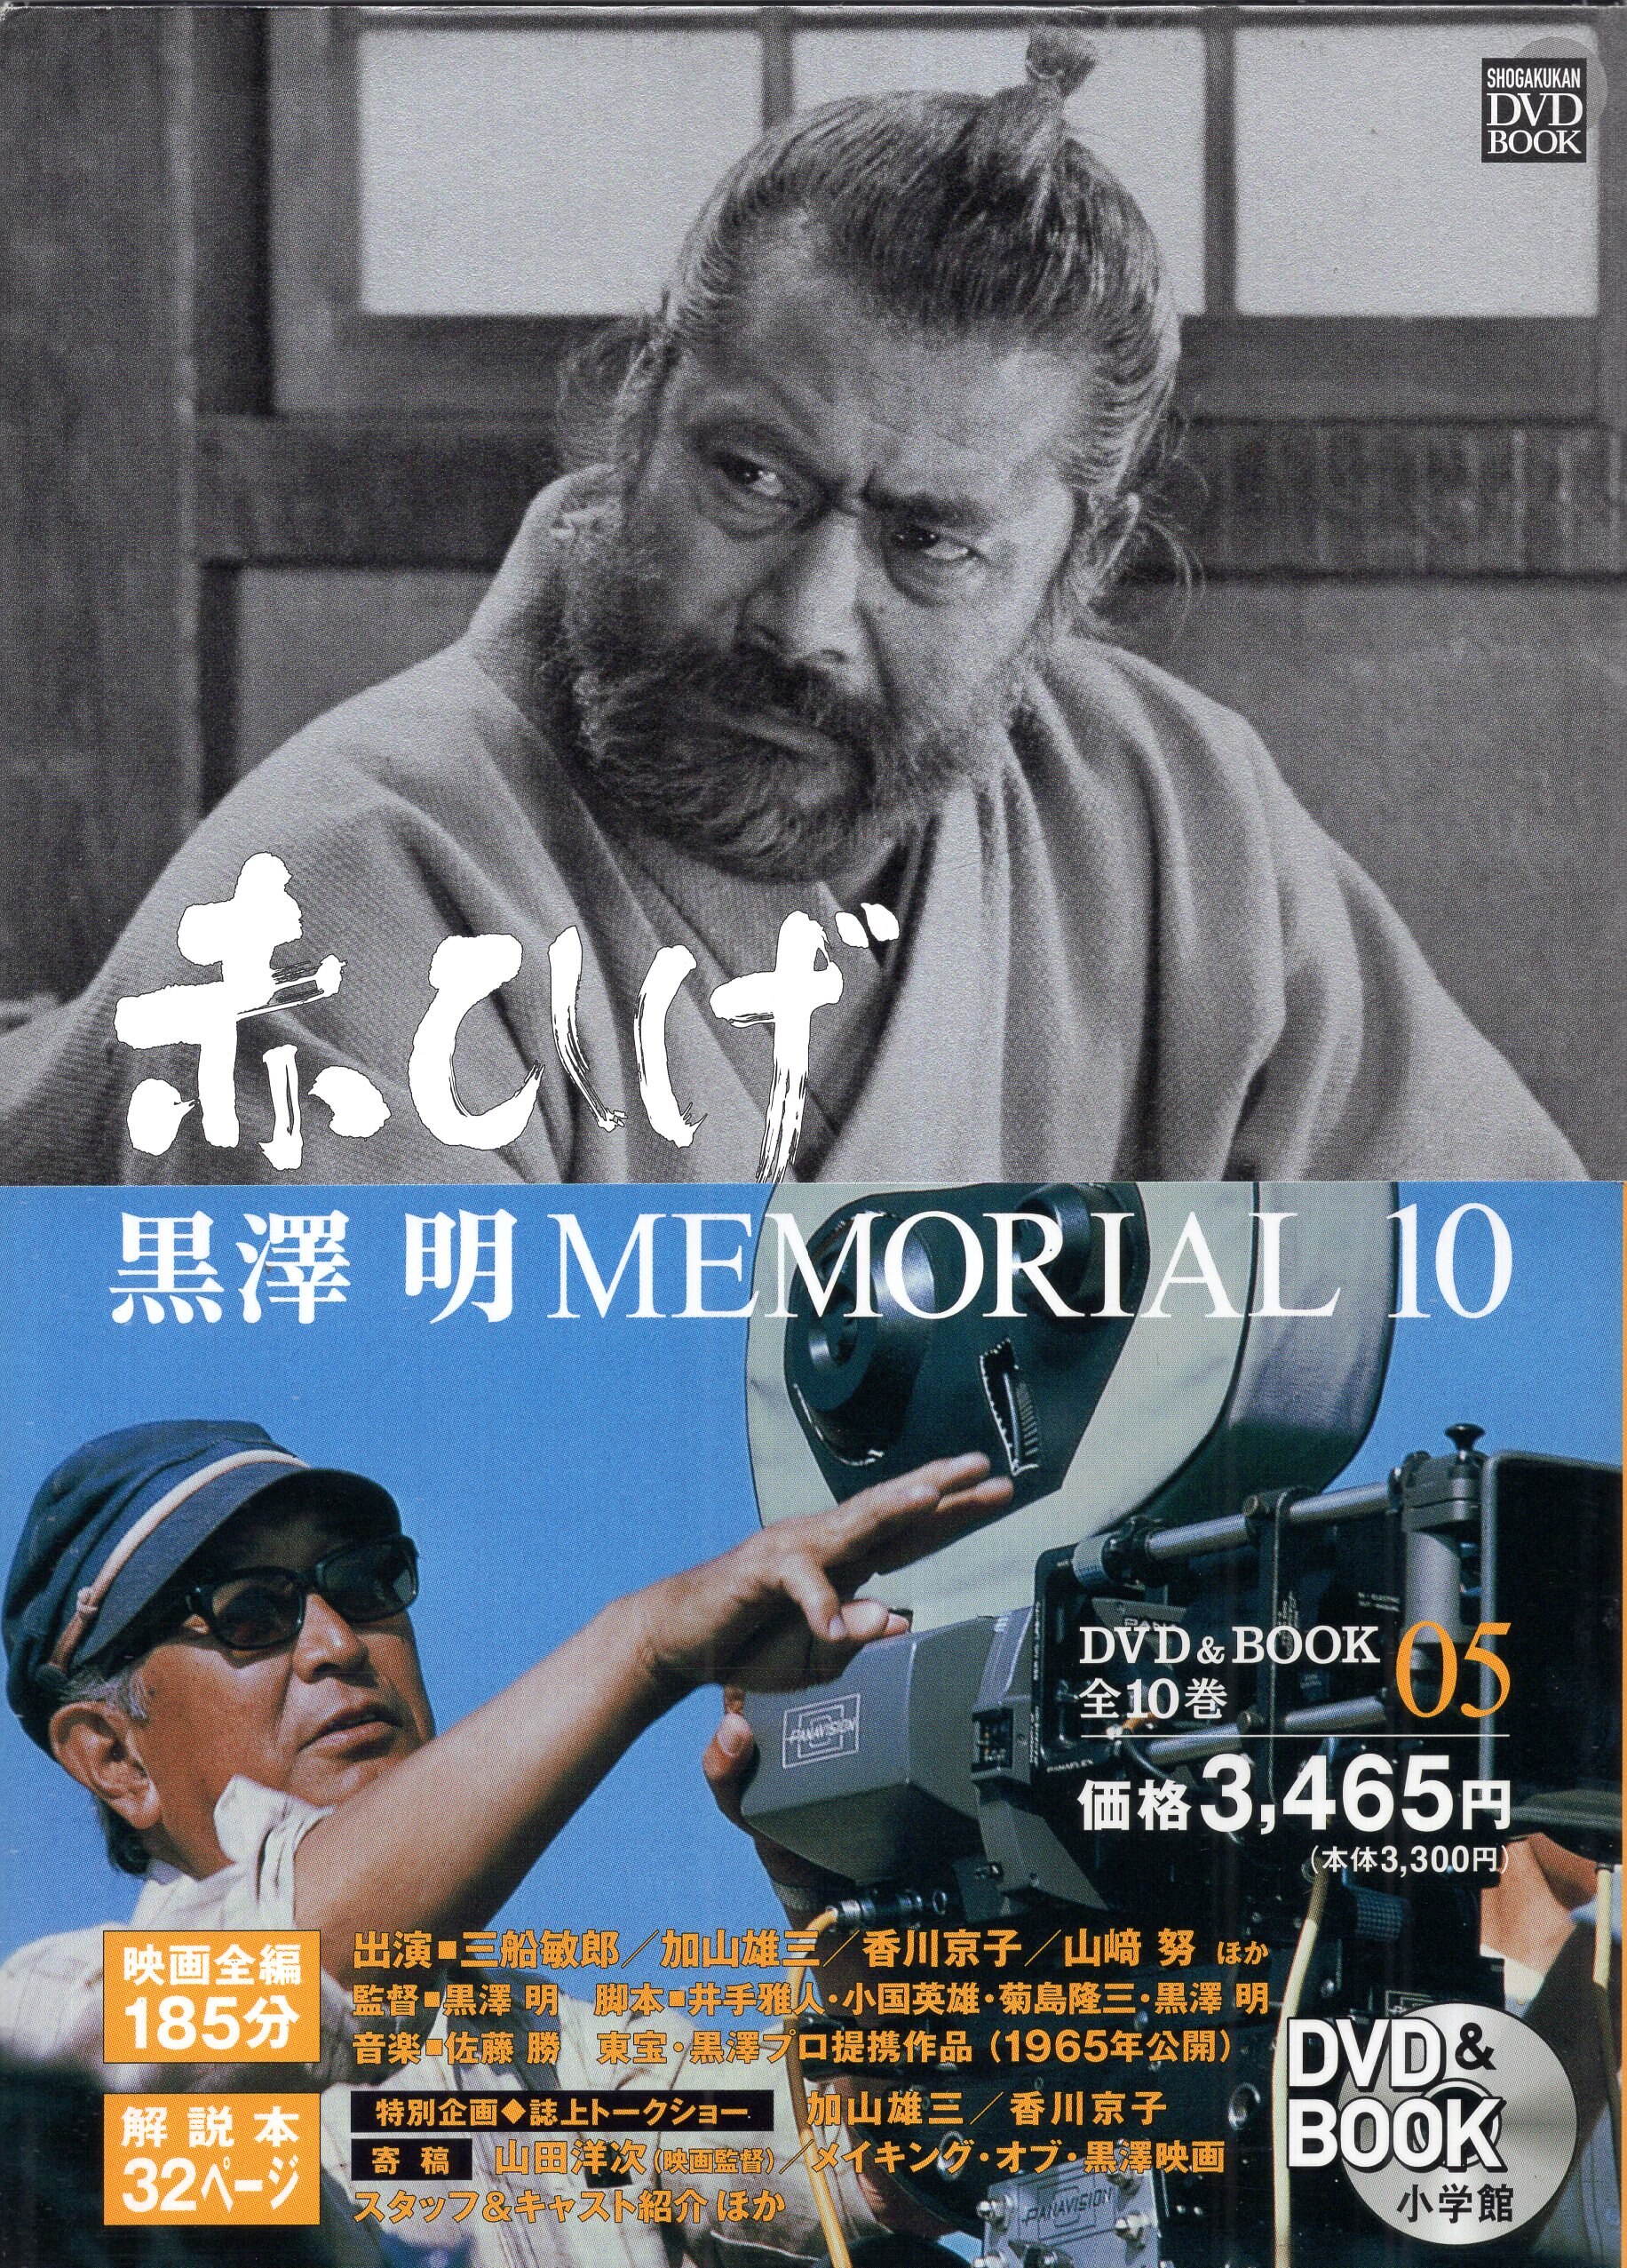 黒澤明 Memorial 10 DVD&BOOK ( 全10巻+別巻2巻) - DVD